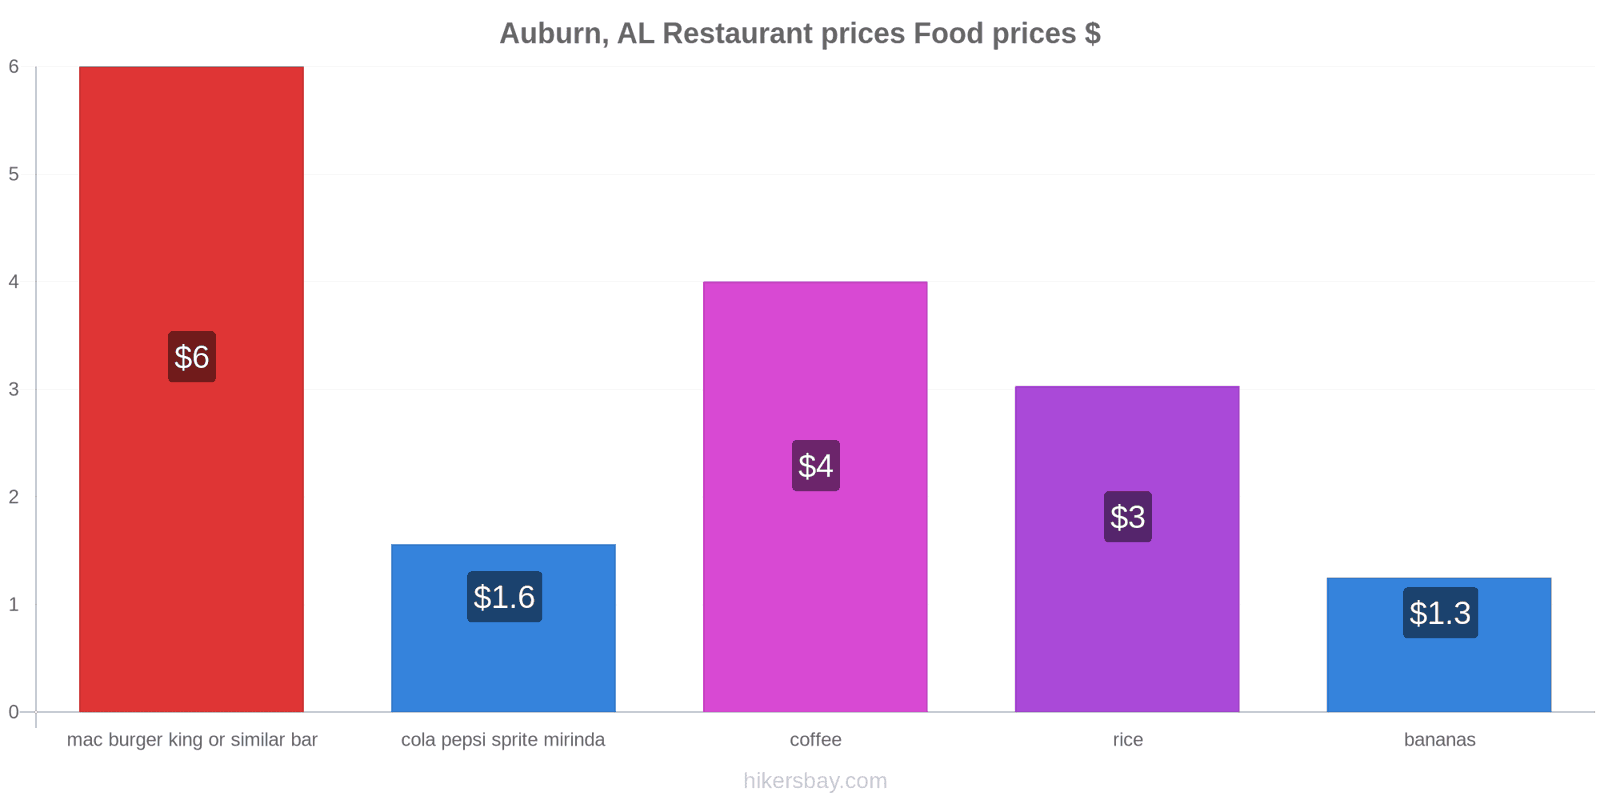 Auburn, AL price changes hikersbay.com